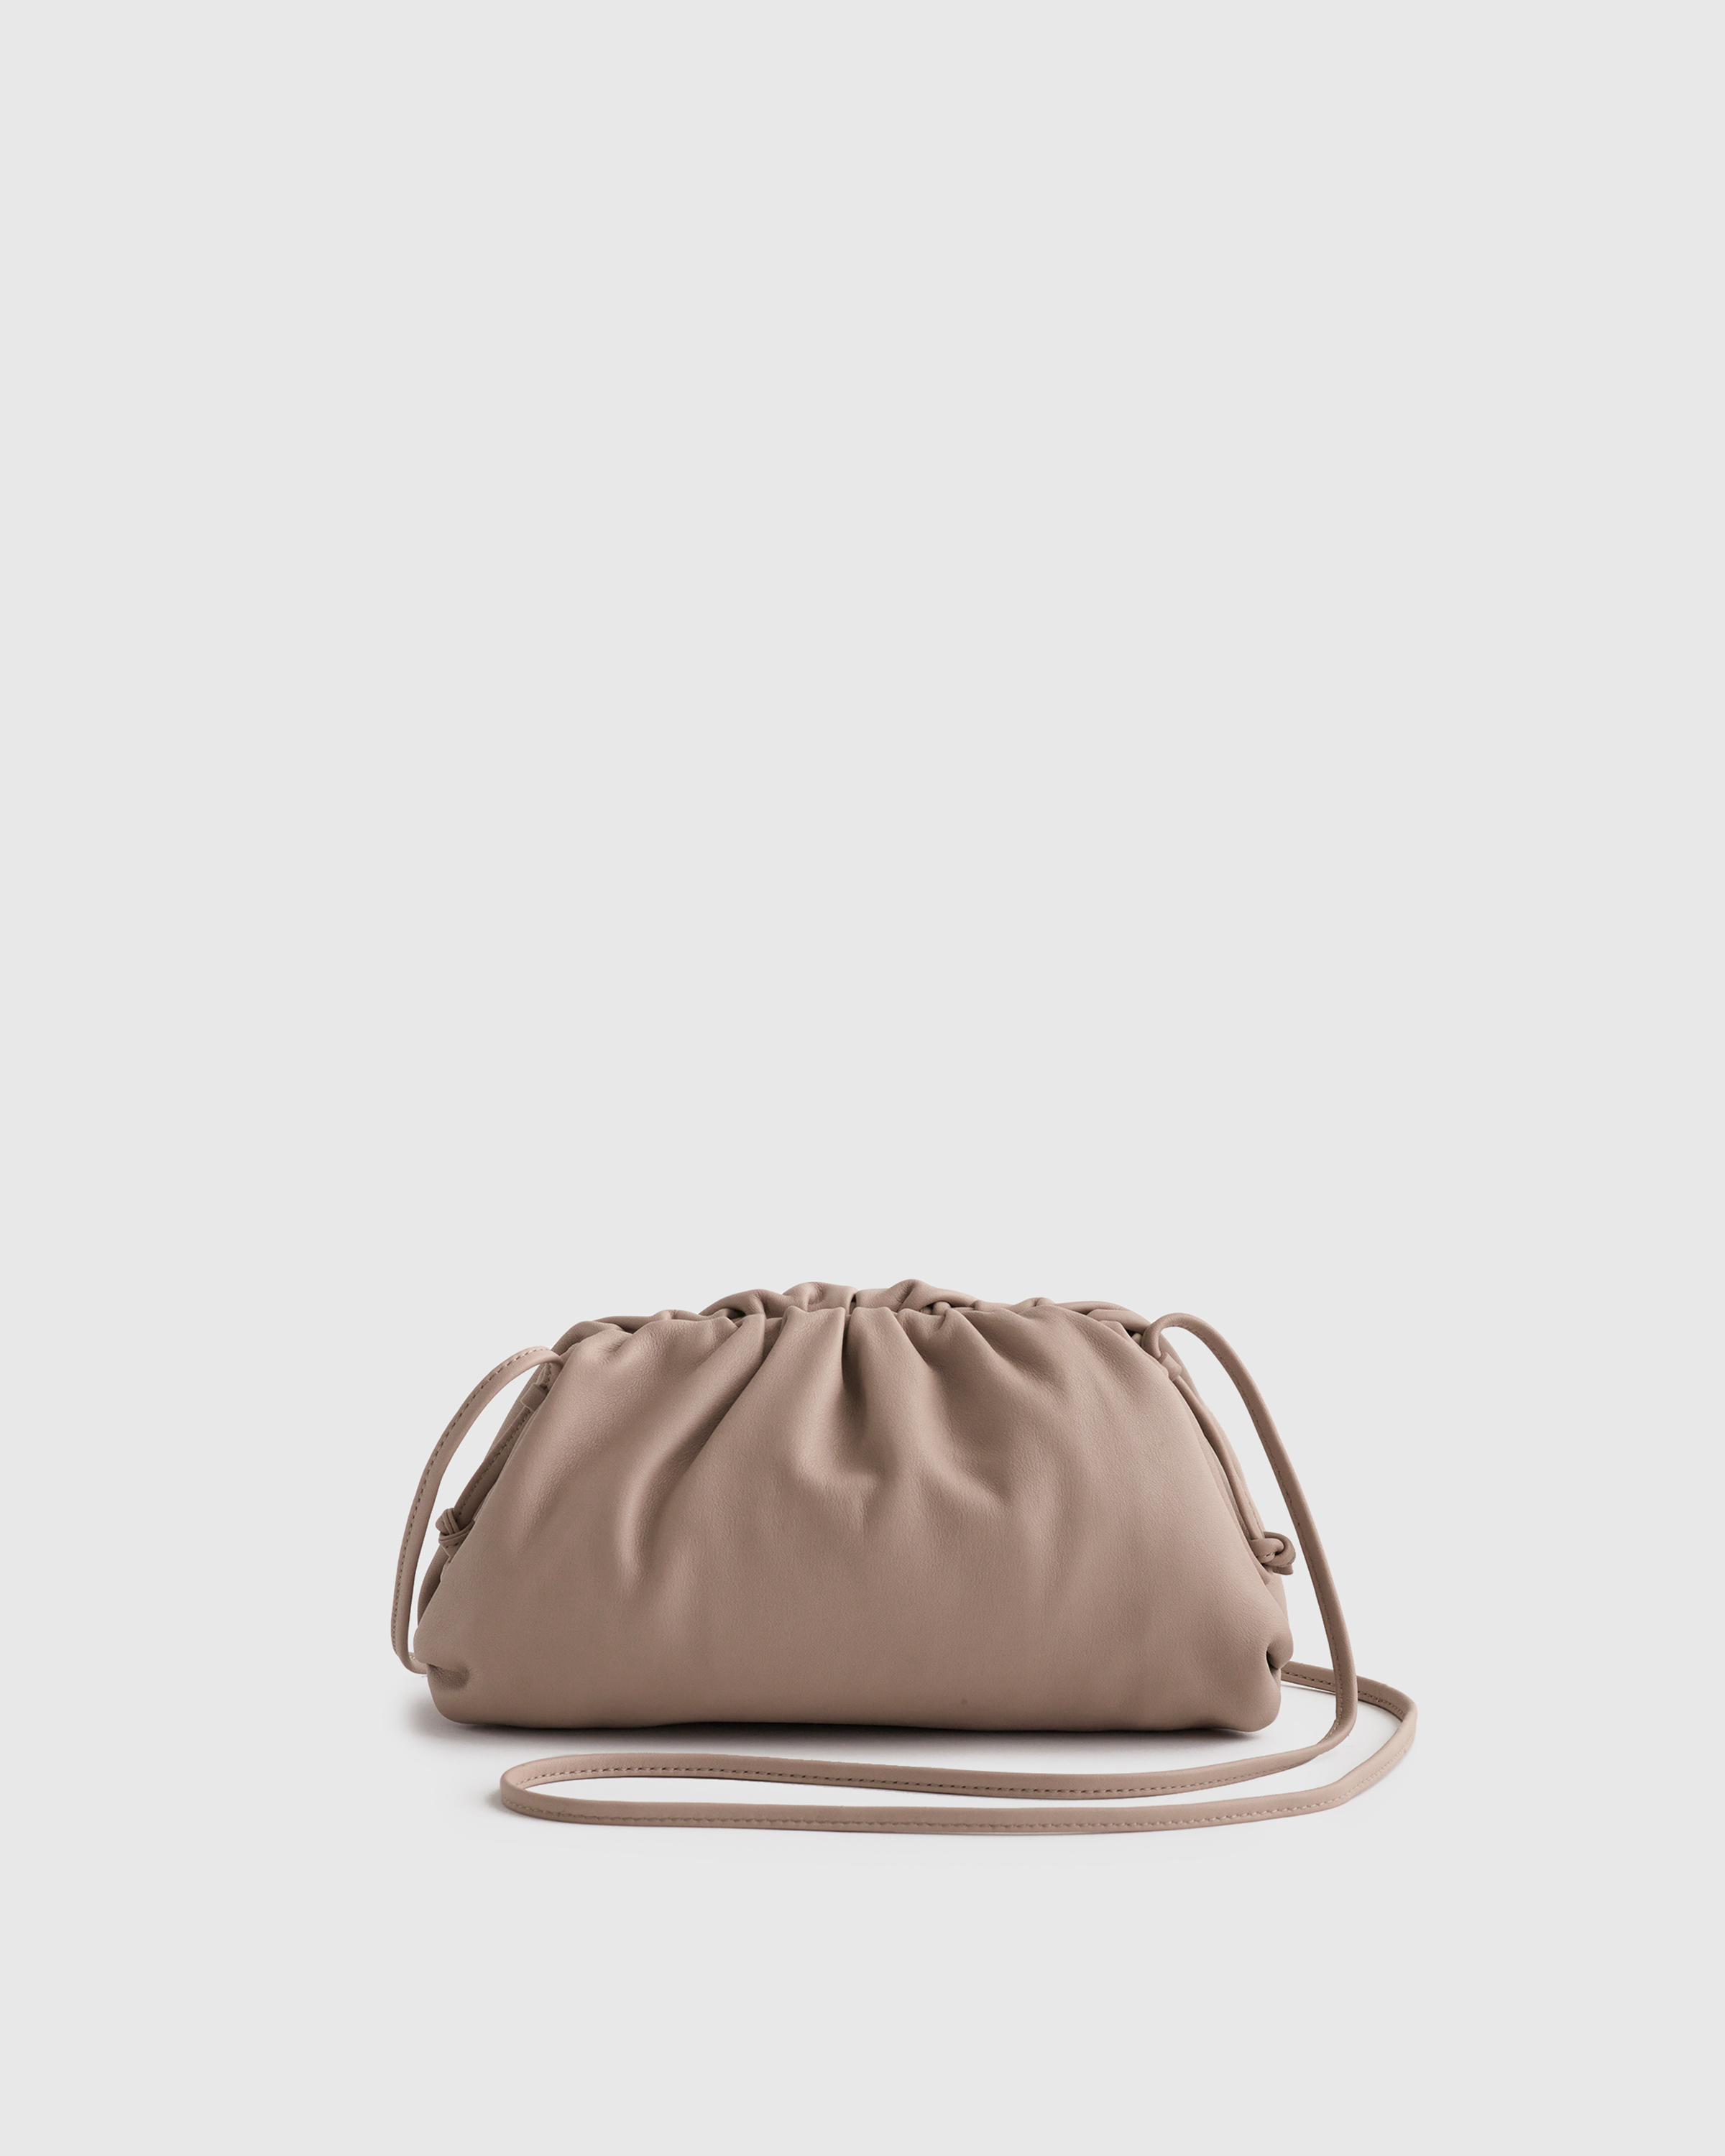 Handbag Pillow Bag Backpack Fashion Luxury Bag - China Bag and